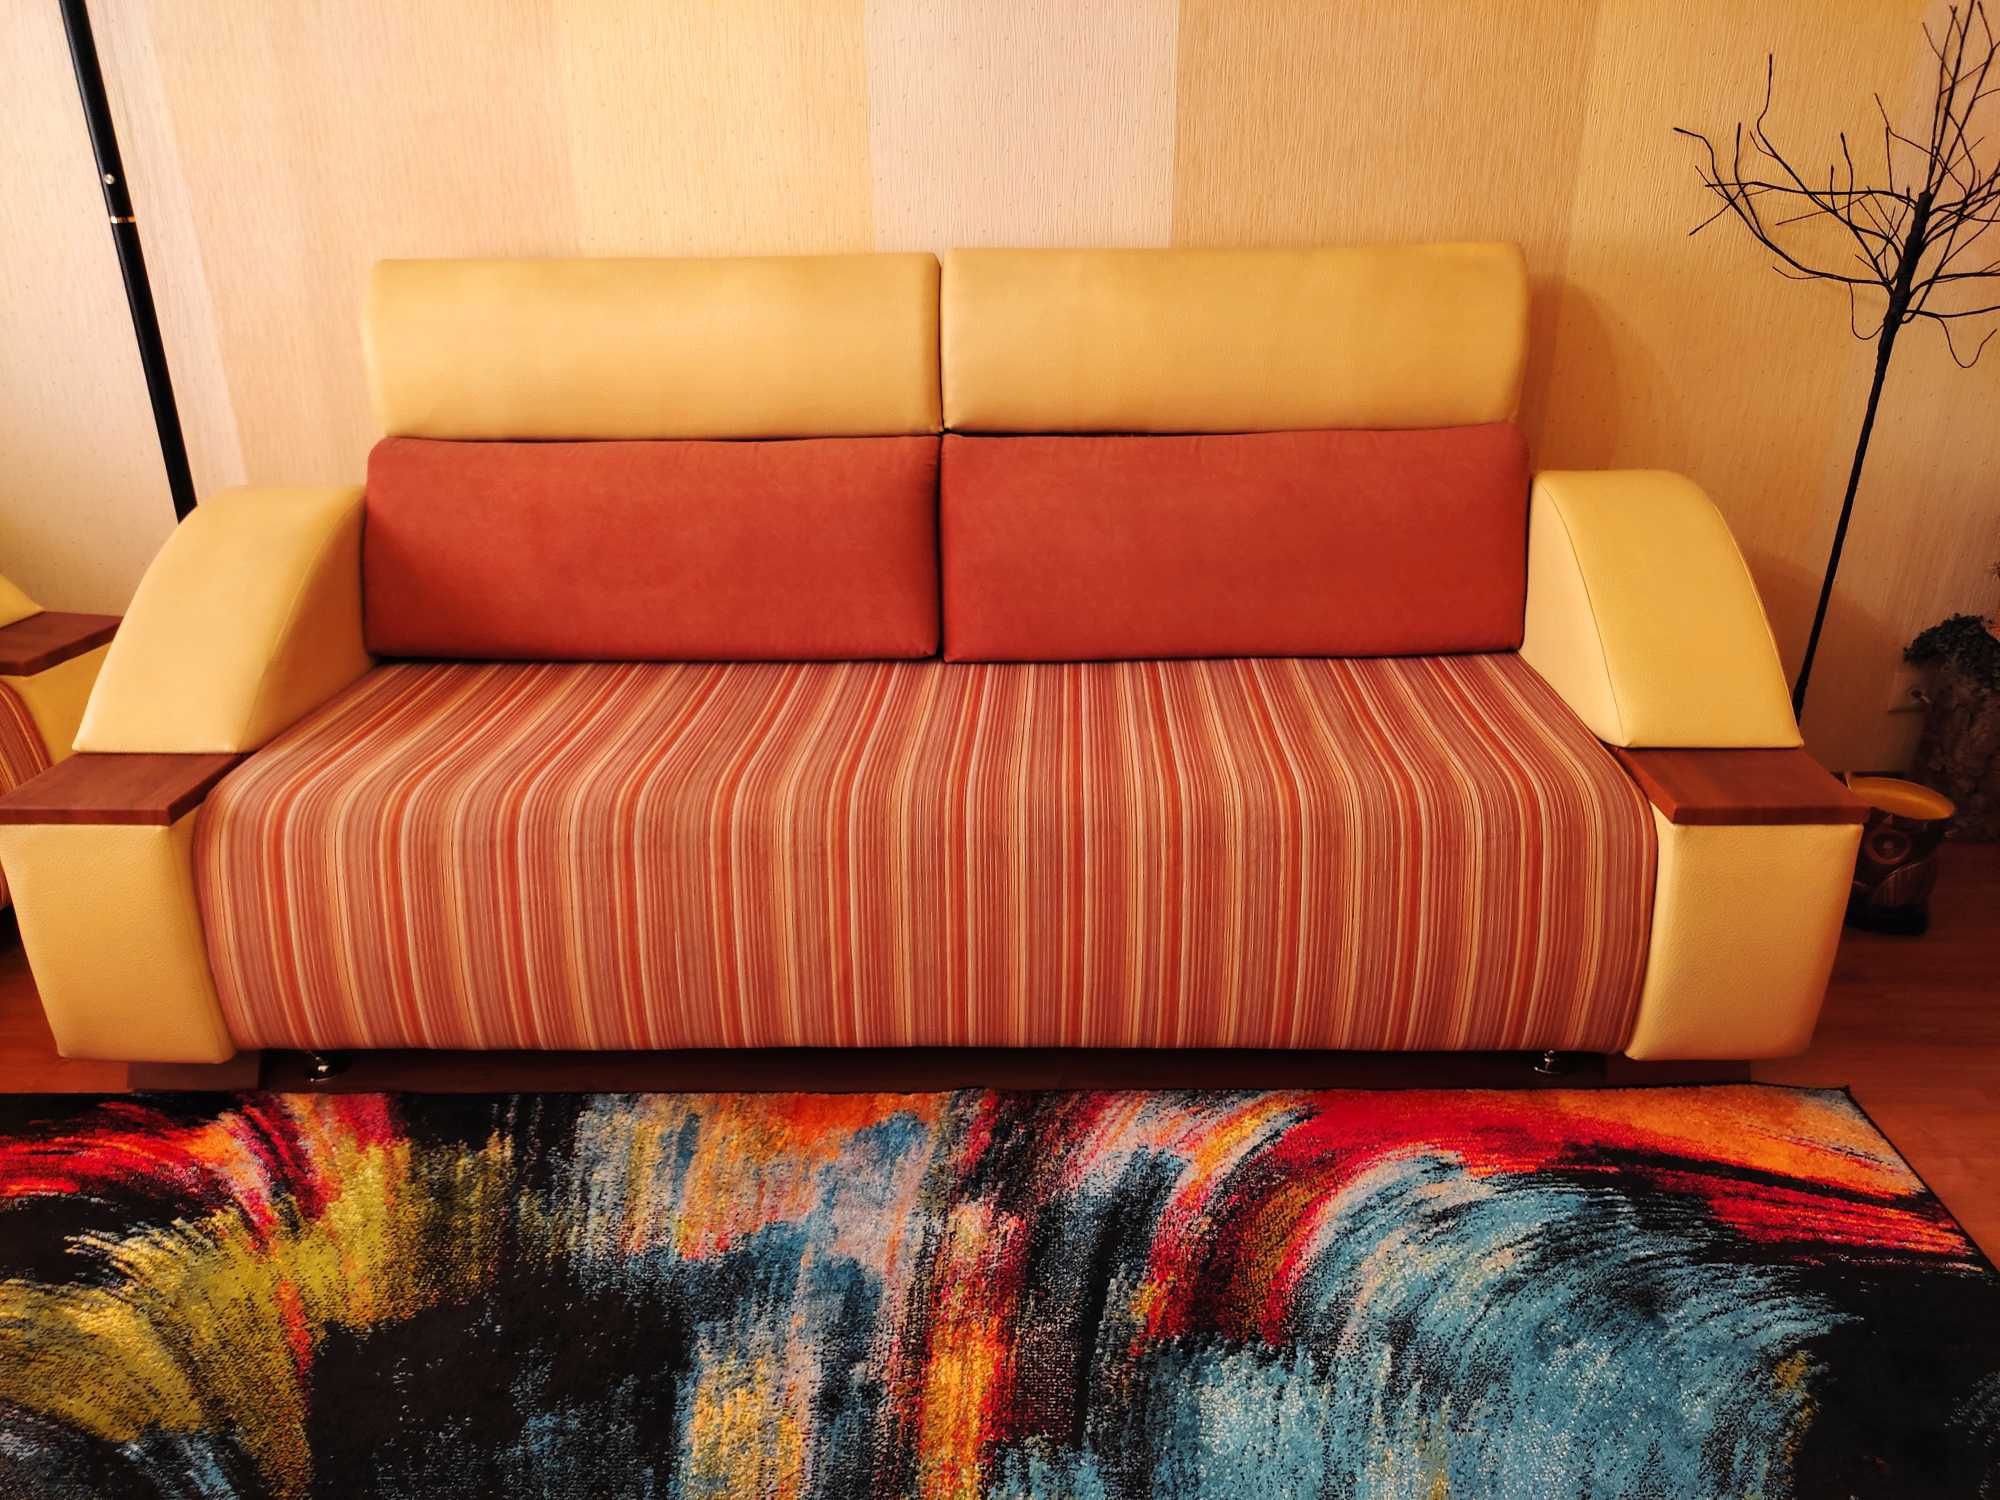 Комплект мягкой мебели - диван+2 кресла б/у в отличном состоянии